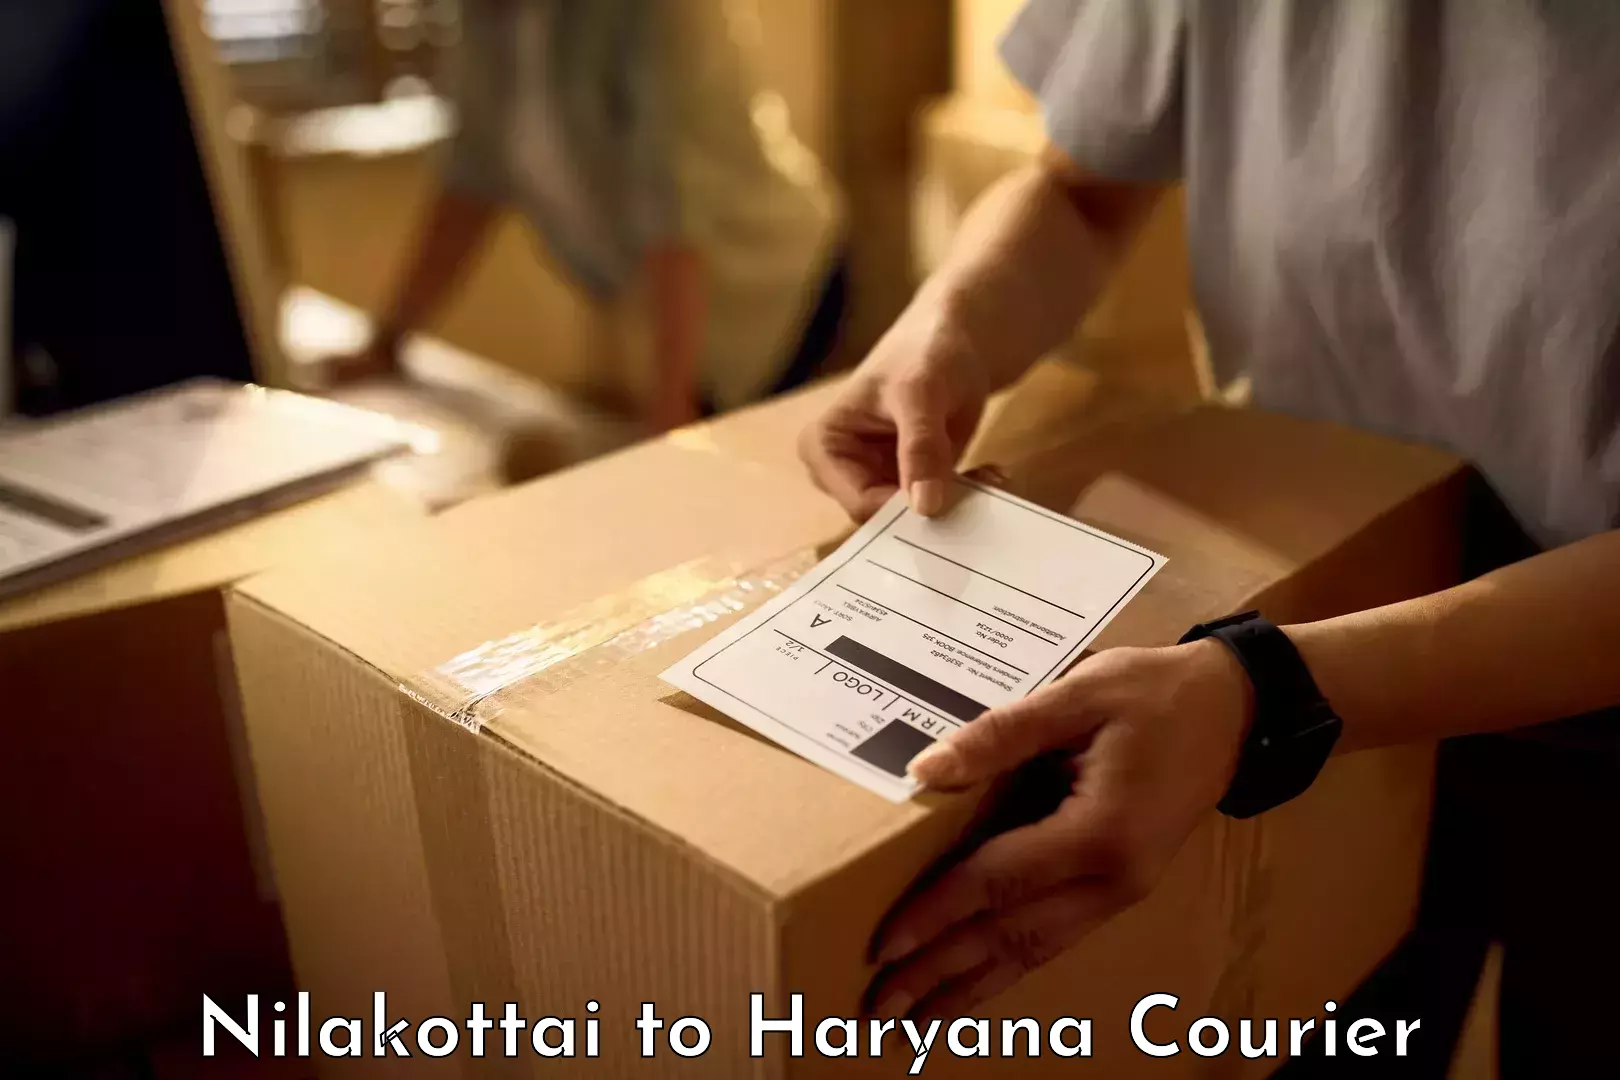 Luggage transport service Nilakottai to NCR Haryana